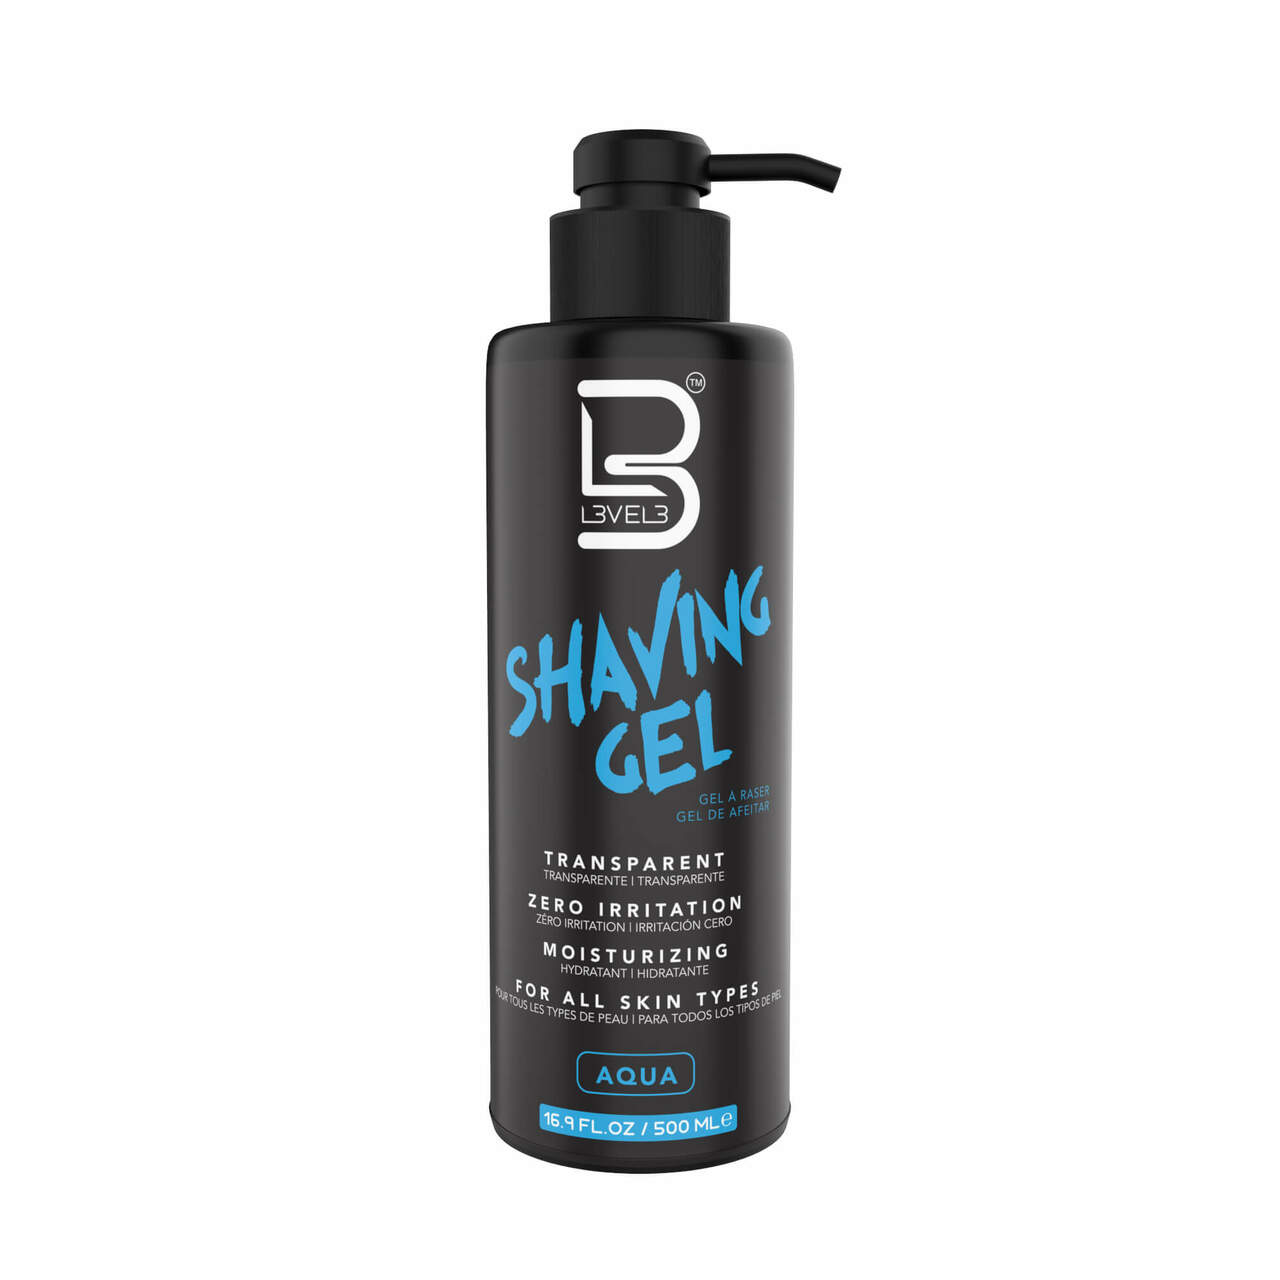 L3VEL3 - Shaving Gel Aqua 500 ml